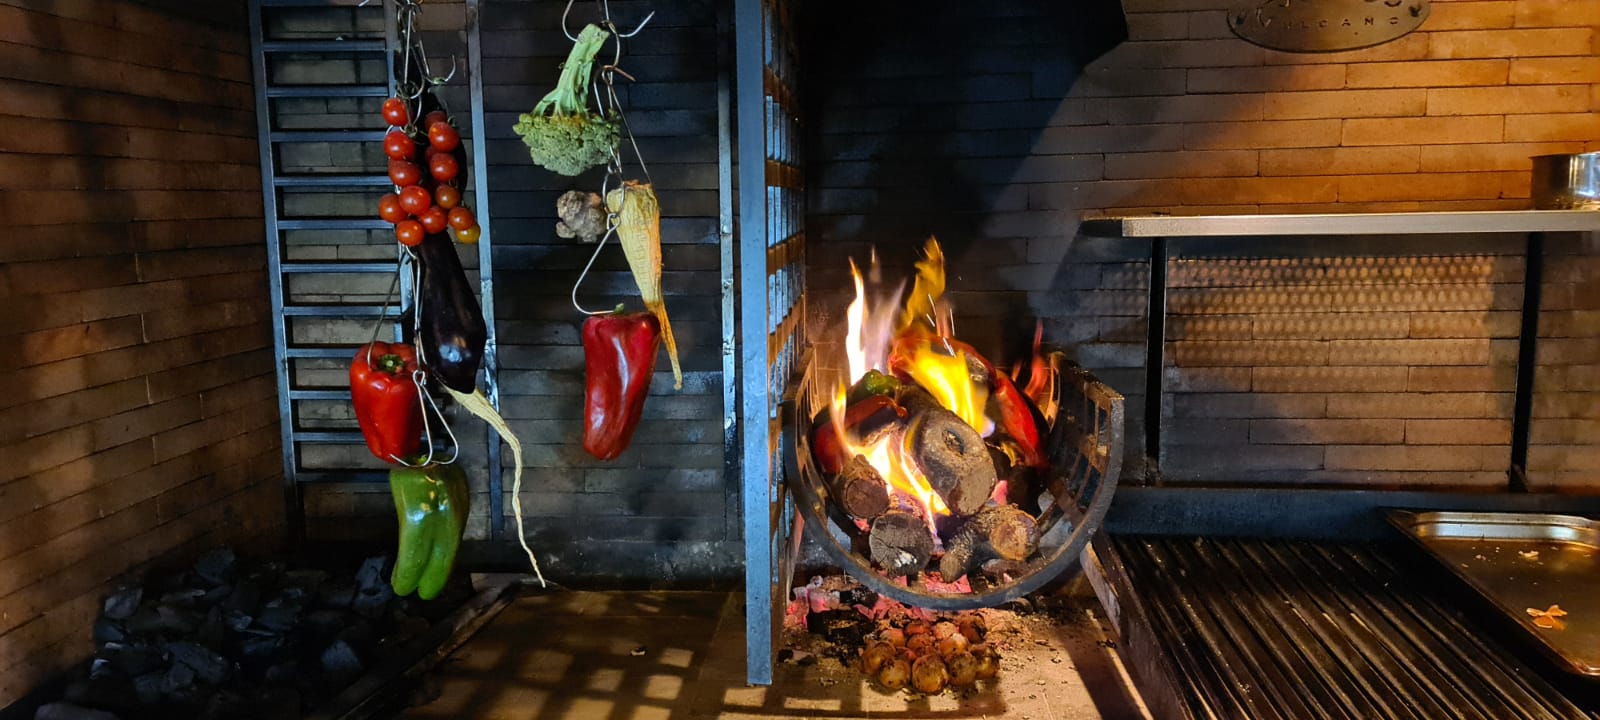 La historia del horno: desde la hoguera a nuestra cocina